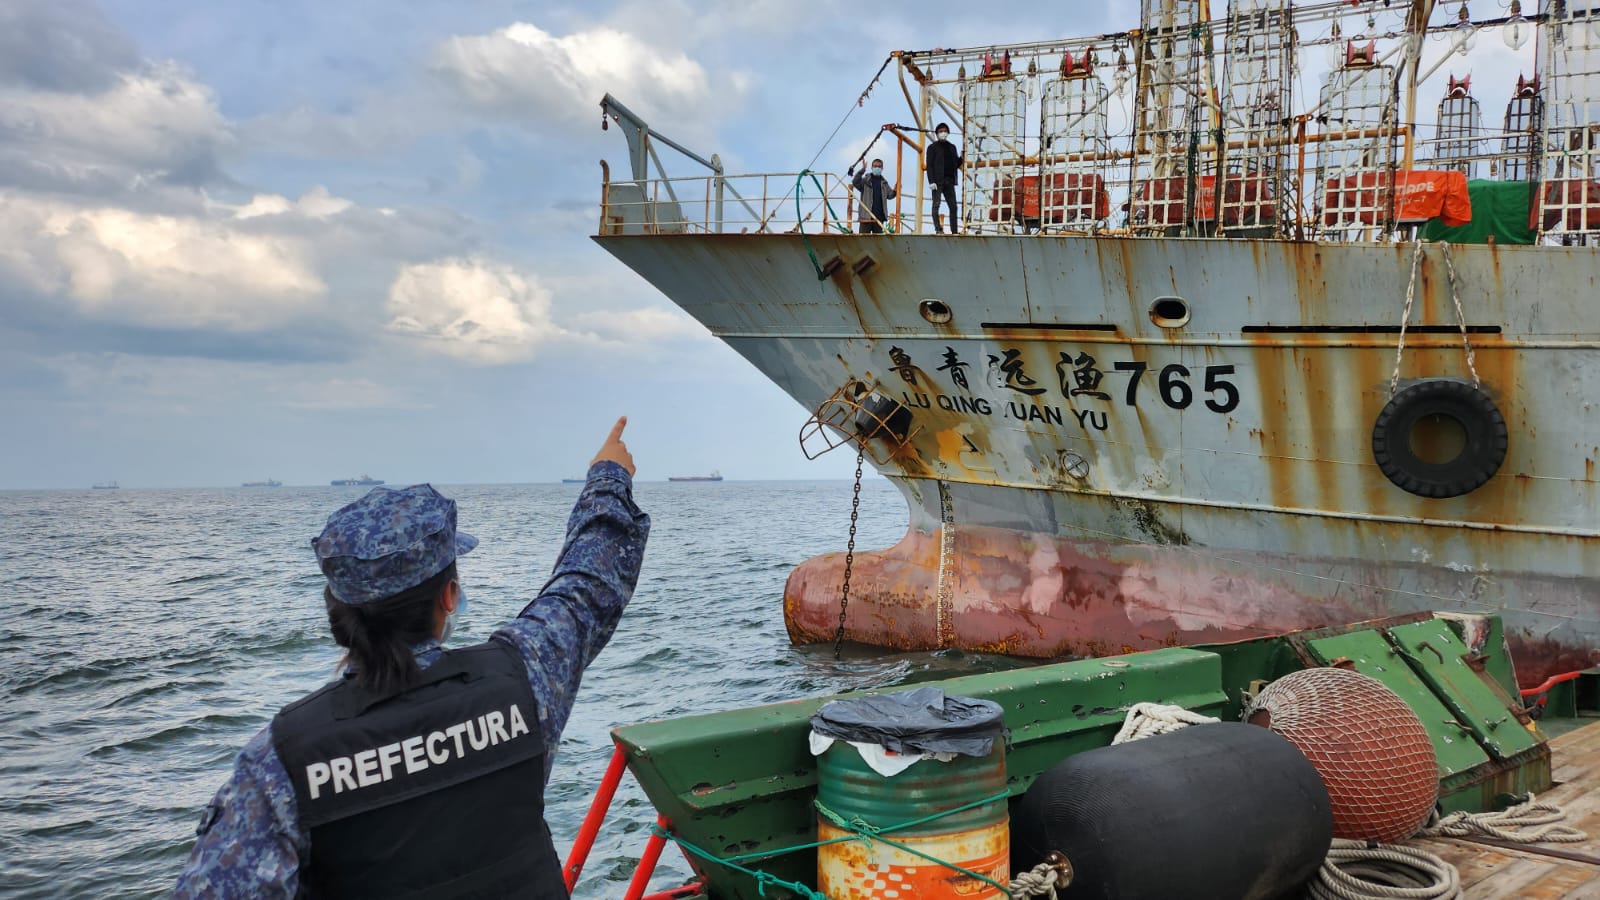 Uruguai: mensagem de socorro evidencia trabalho forçado na frota pesqueira chinesa